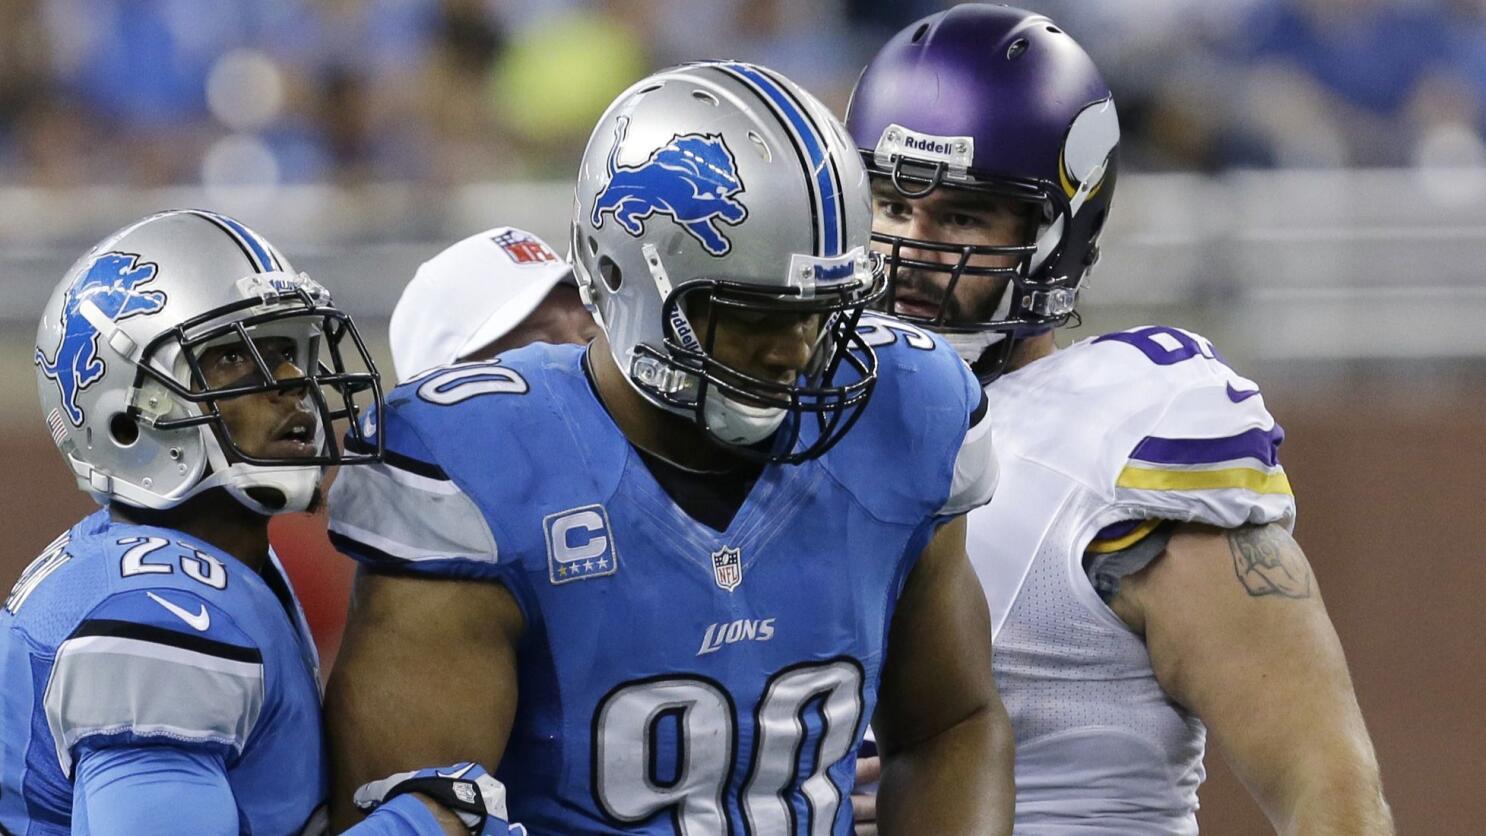 Detroit Lions leave NFL fans split after controversial new uniform